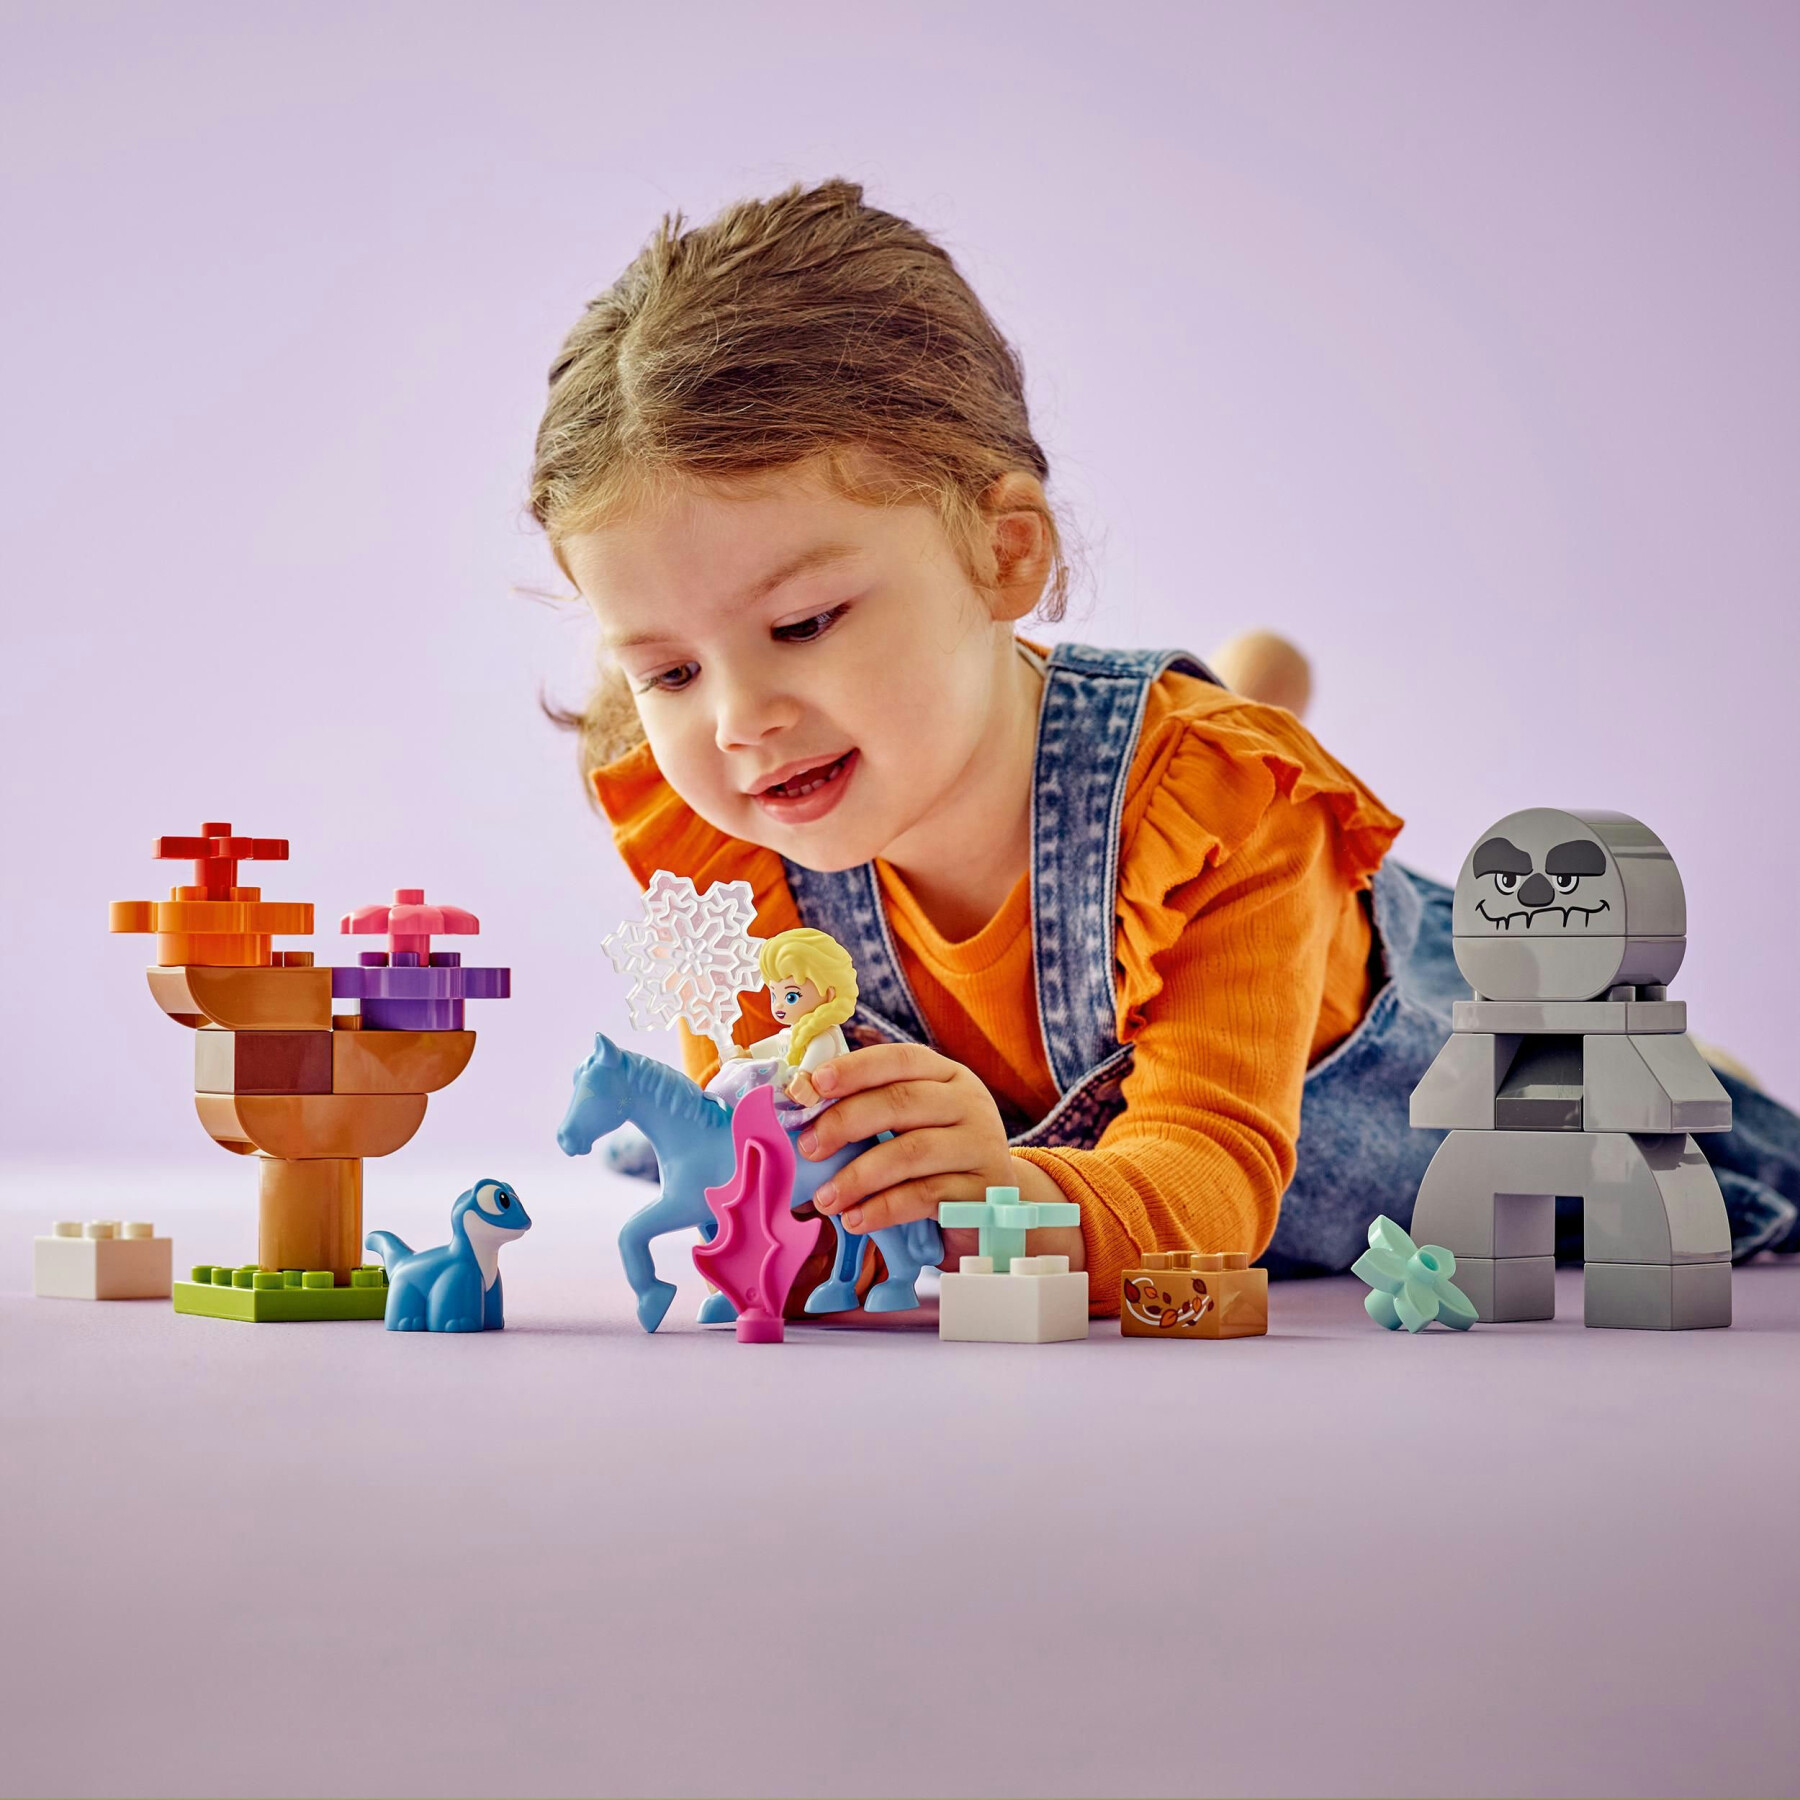 Lego duplo disney 10418 elsa e bruni nella foresta incantata, gioco per bambini 2+ con il cavallo giocattolo nokk di frozen 2 - DISNEY PRINCESS, LEGO DUPLO, Frozen